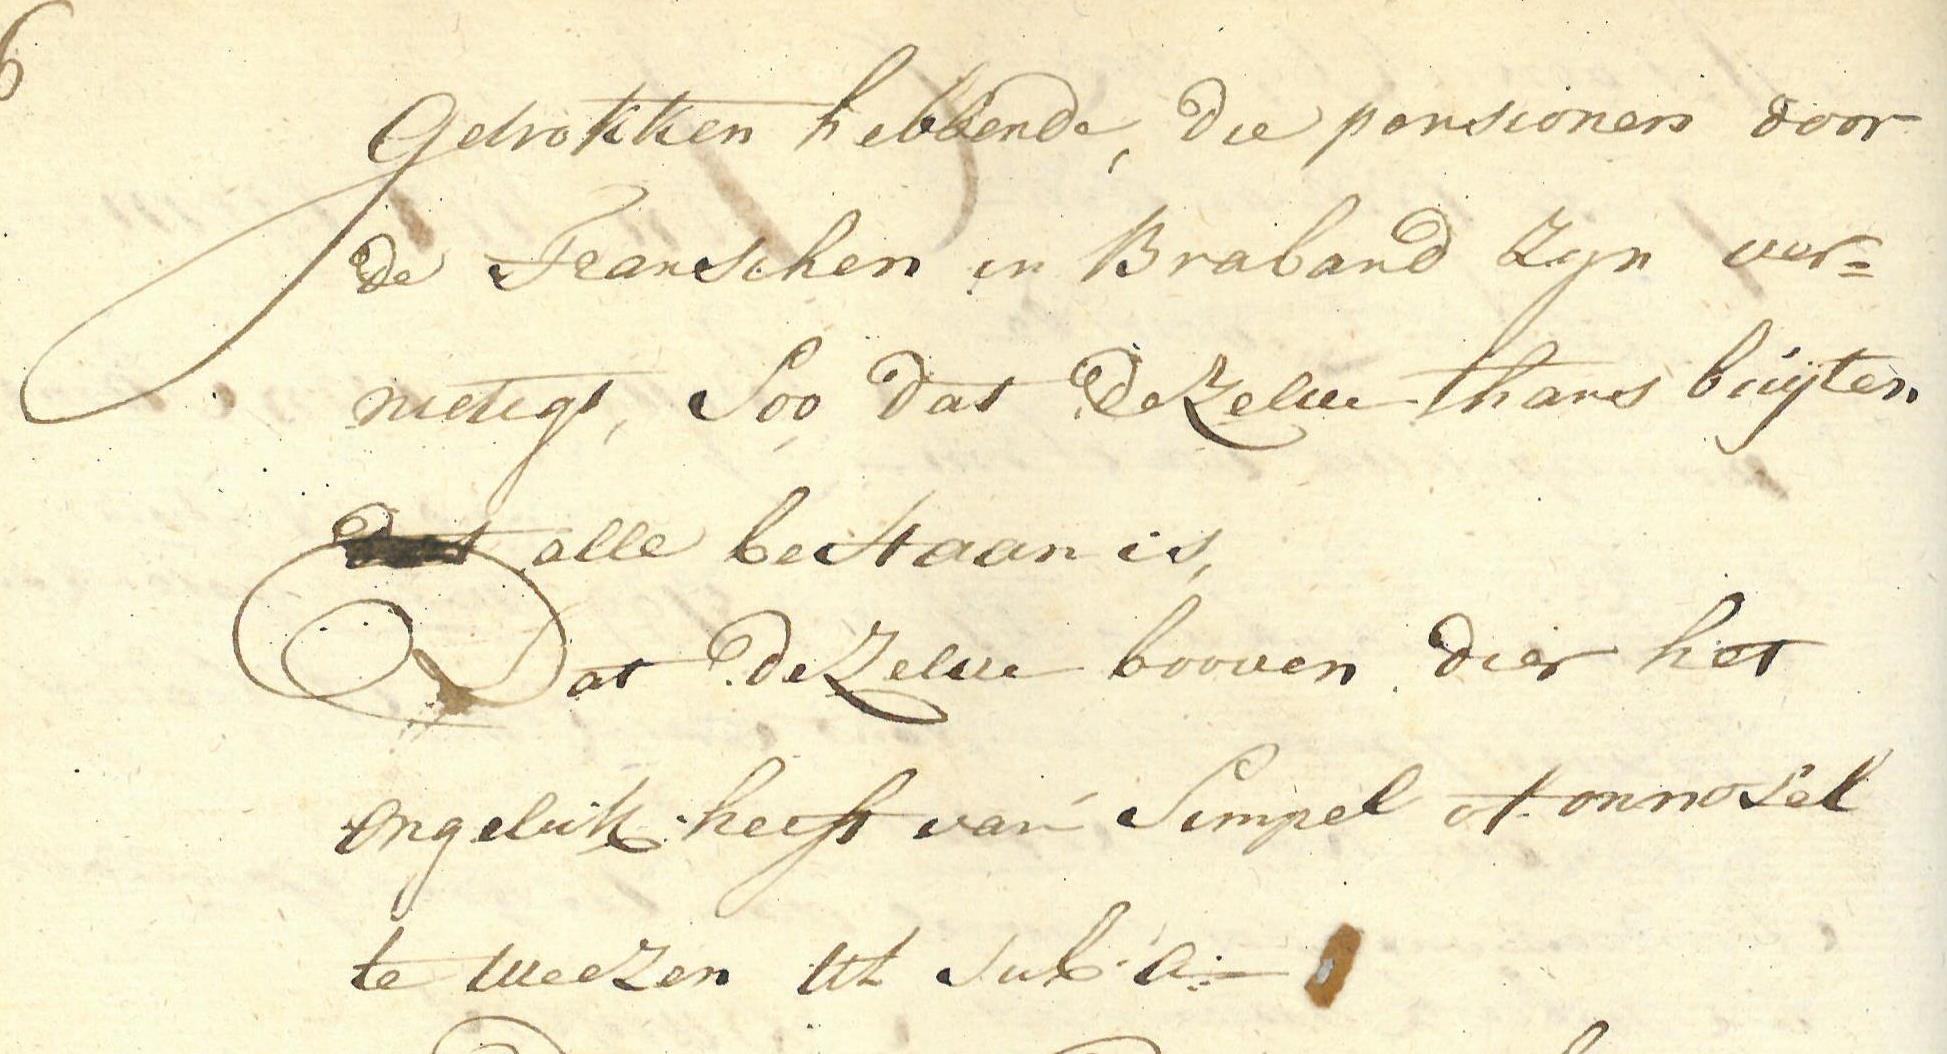 Johanna Margaretha van Elsenbroek omschreven door haar broer Franciscus. Bron: toegang 7040, inv. nr. 94. Datum akte: 21-7-1799